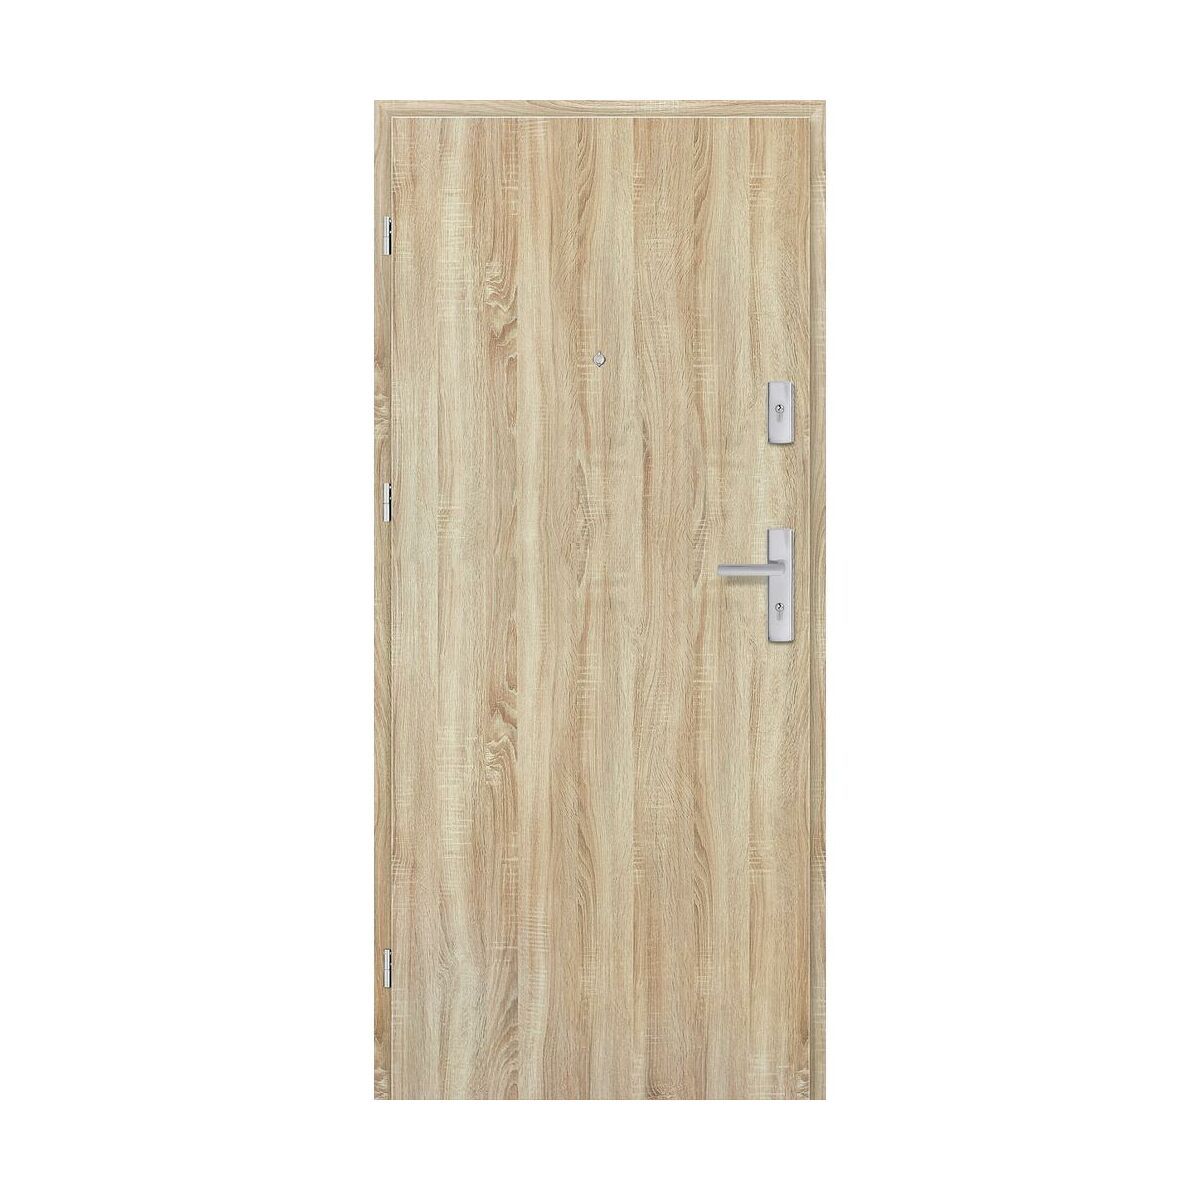 Drzwi wewnętrzne drewniane wejściowe Grafen Dąb Sonoma Polska 80 Lewe otwierane do wewnątrz Nawadoor